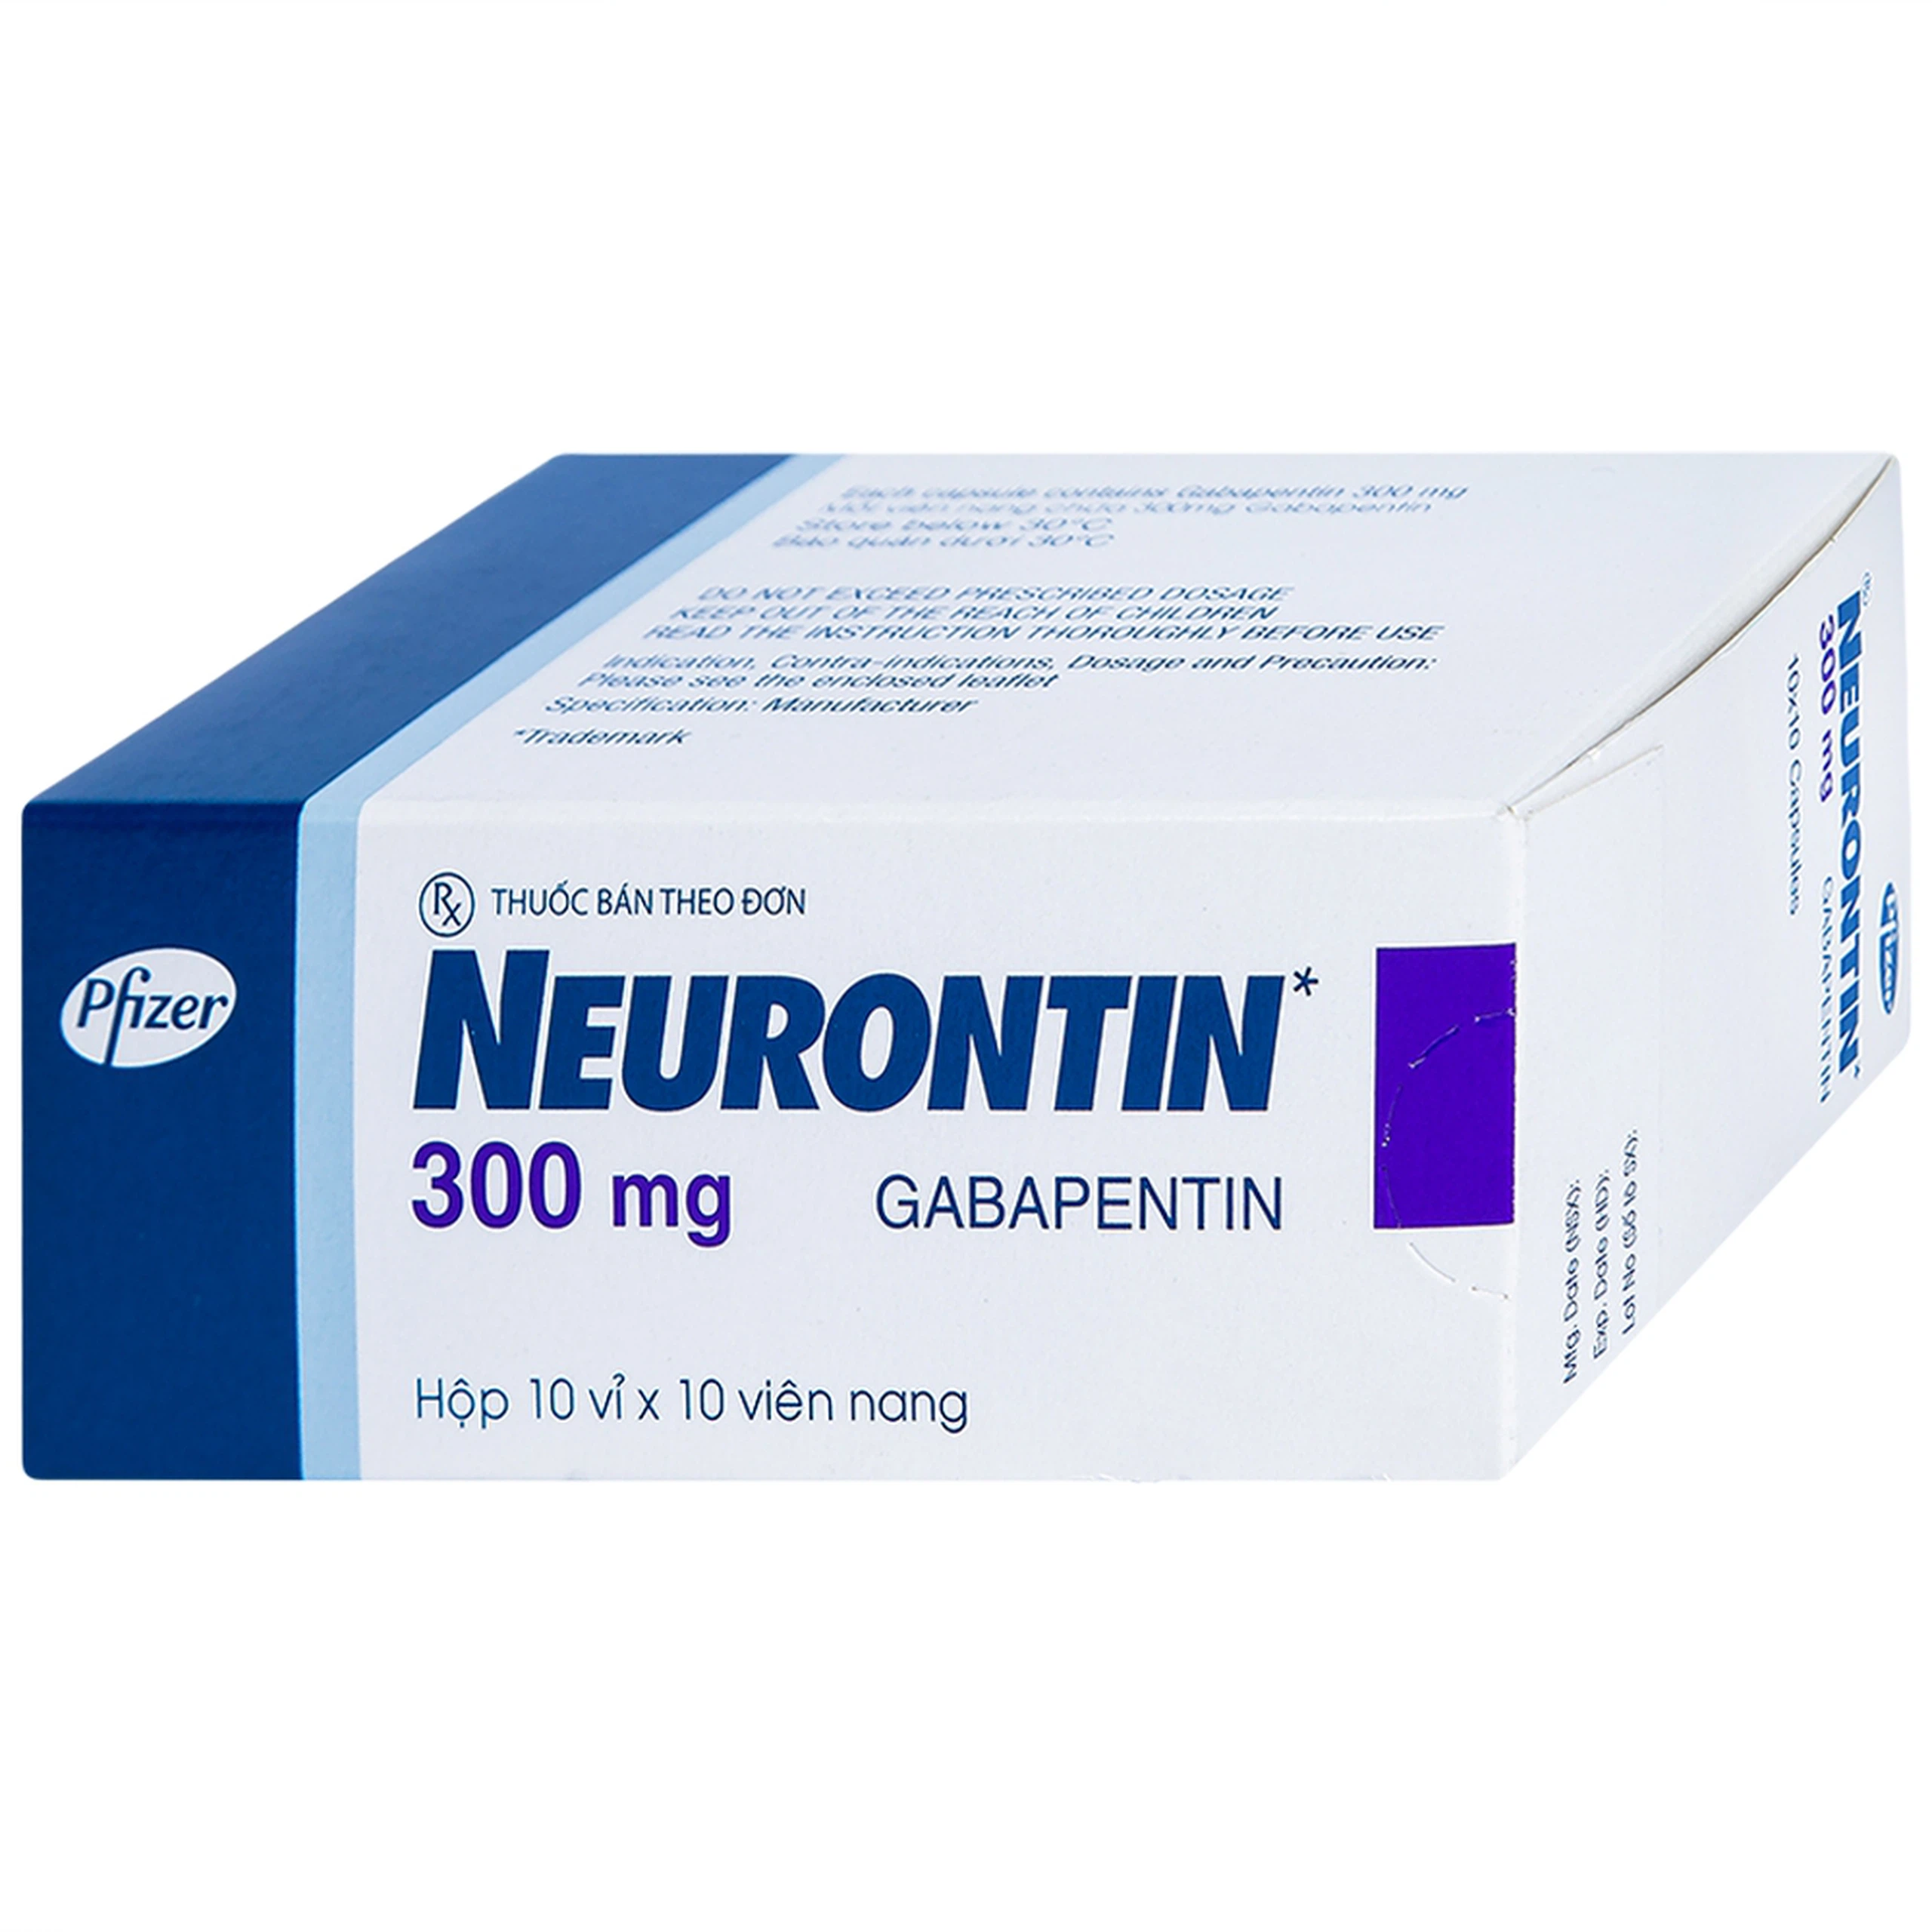 Viên nang cứng Neurontin 300mg Pfizer điều trị hỗ trợ trong động kinh cục bộ (10 vỉ x 10 viên)